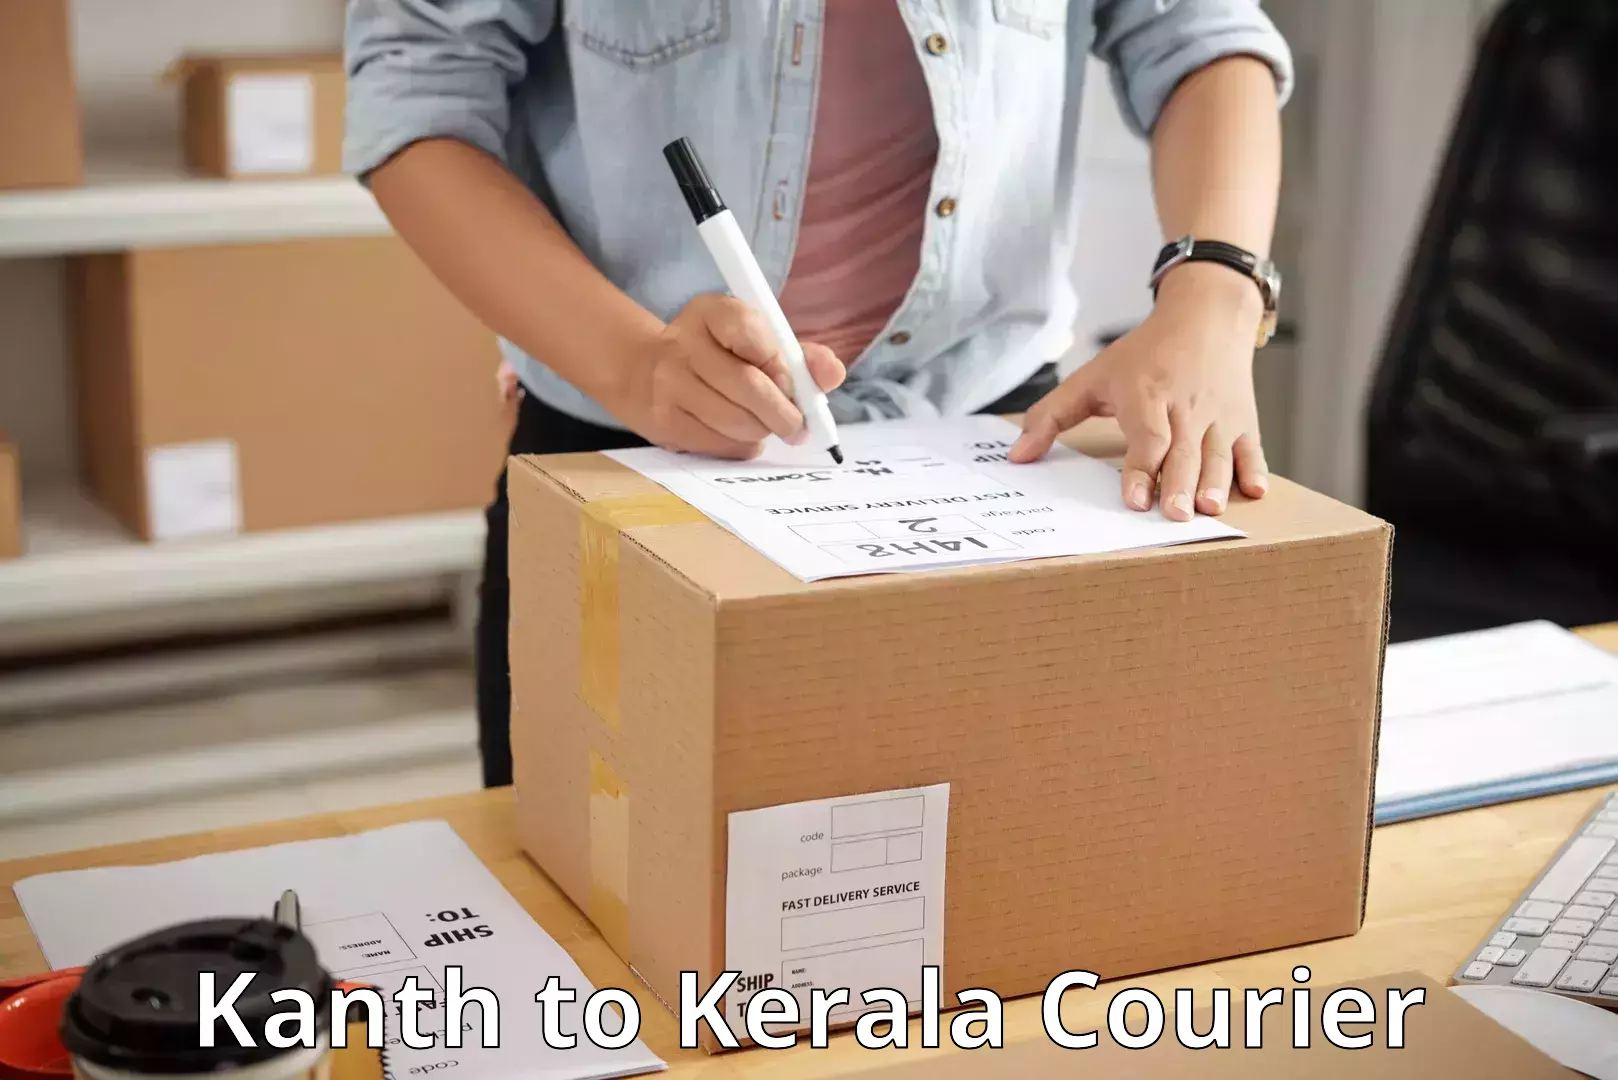 Efficient parcel tracking Kanth to Kalanjoor